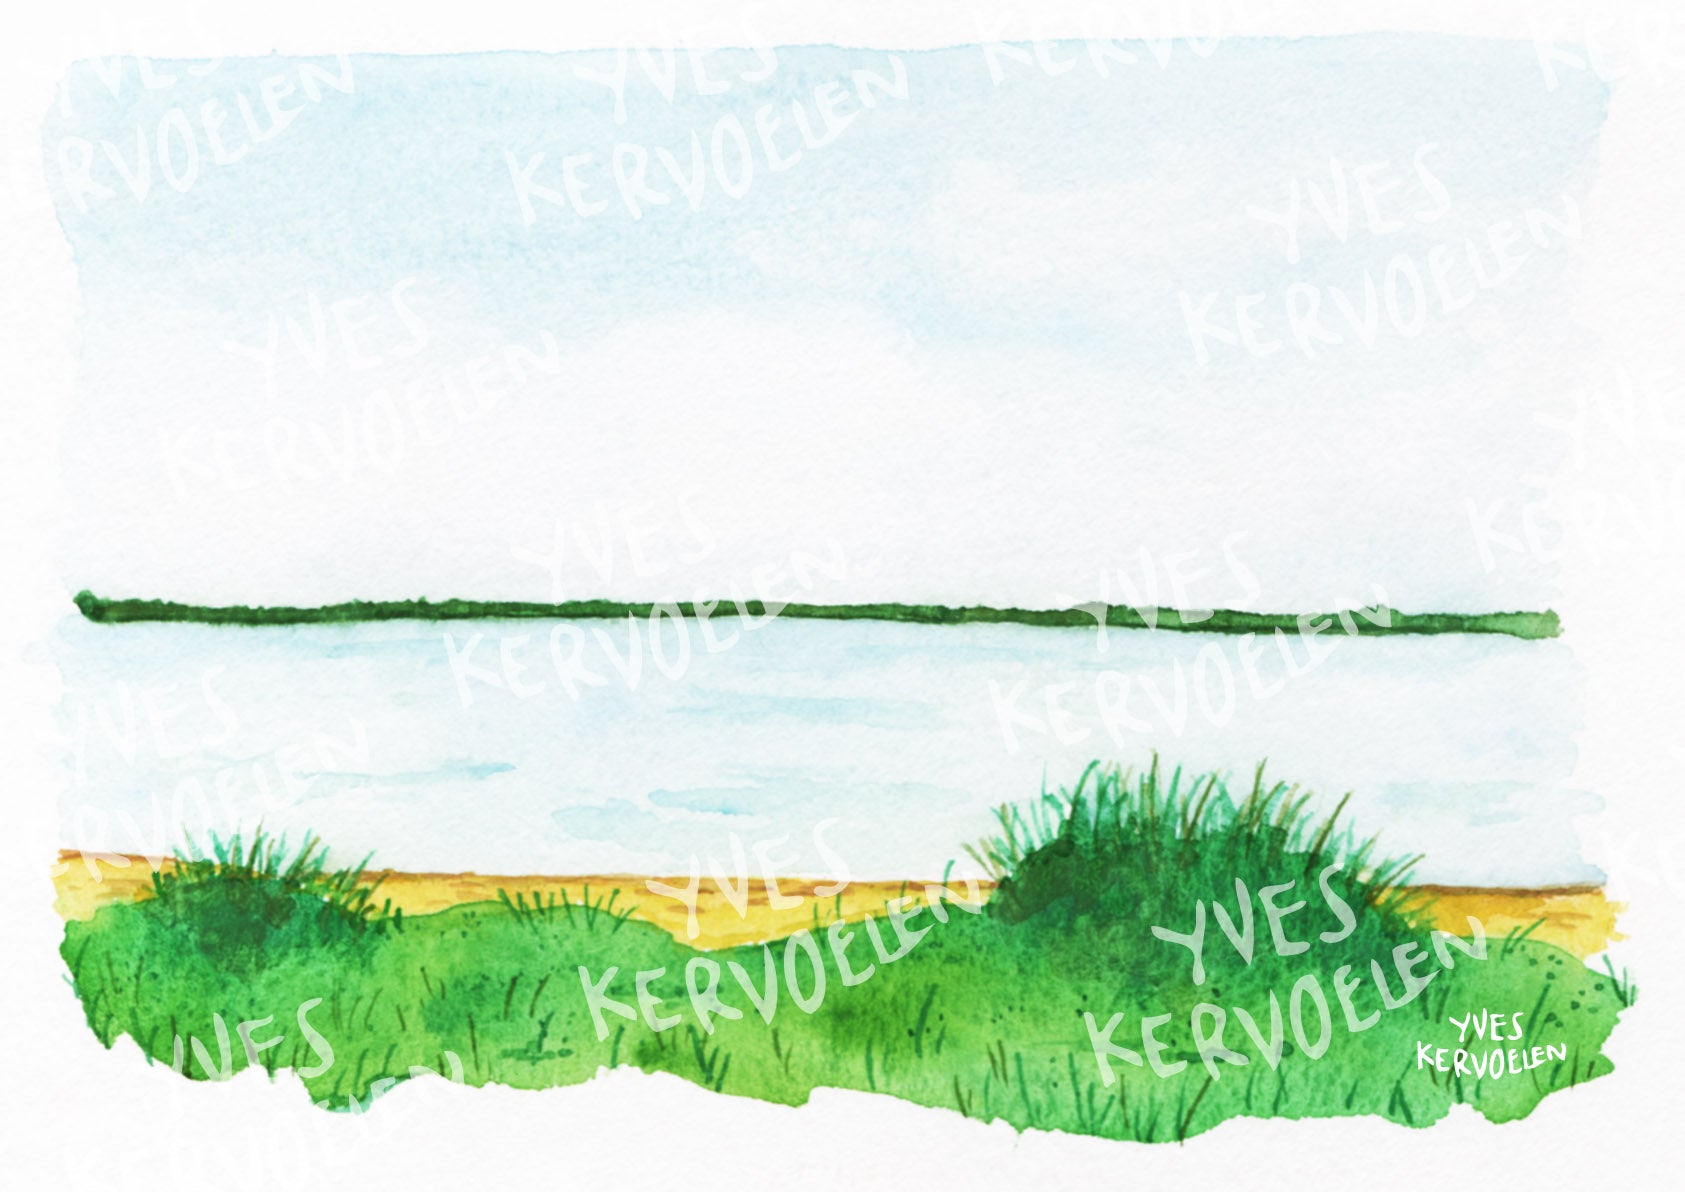 Lake View 1, 2, 3 - Landscape - Art - A4/A3